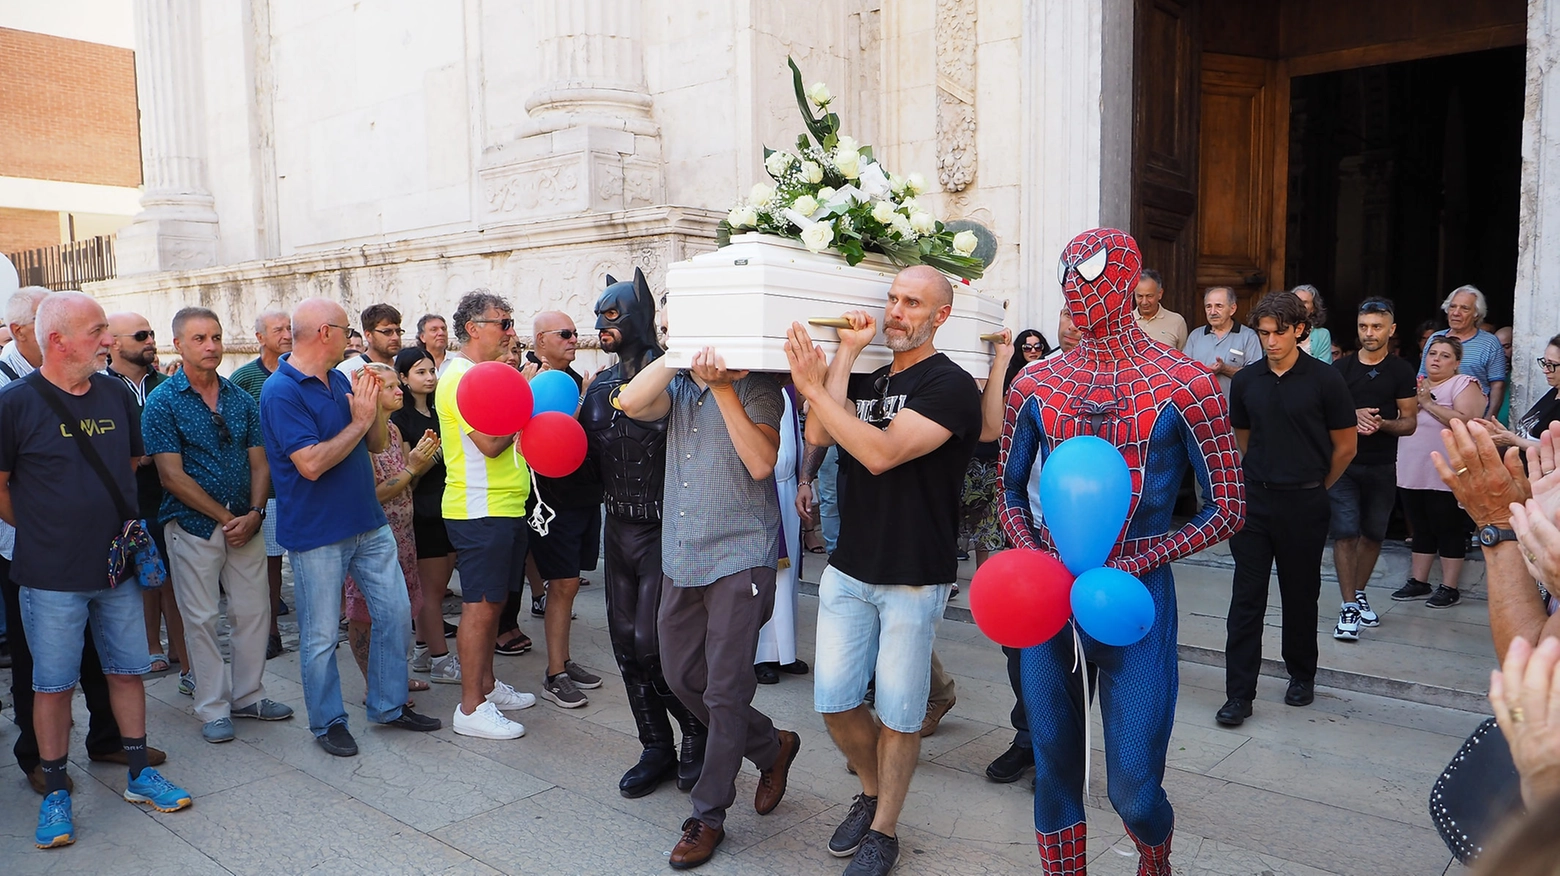 Folla sul sagrato del Duomo di Rimini, in tanti per l’ultimo saluto alla 39enne che si è tolta la vita portando con sé il figlioletto. Alla cerimonia, due amici del papà del piccolo erano vestiti da Spiderman e Batman, i due personaggi tanto amati dal bambino